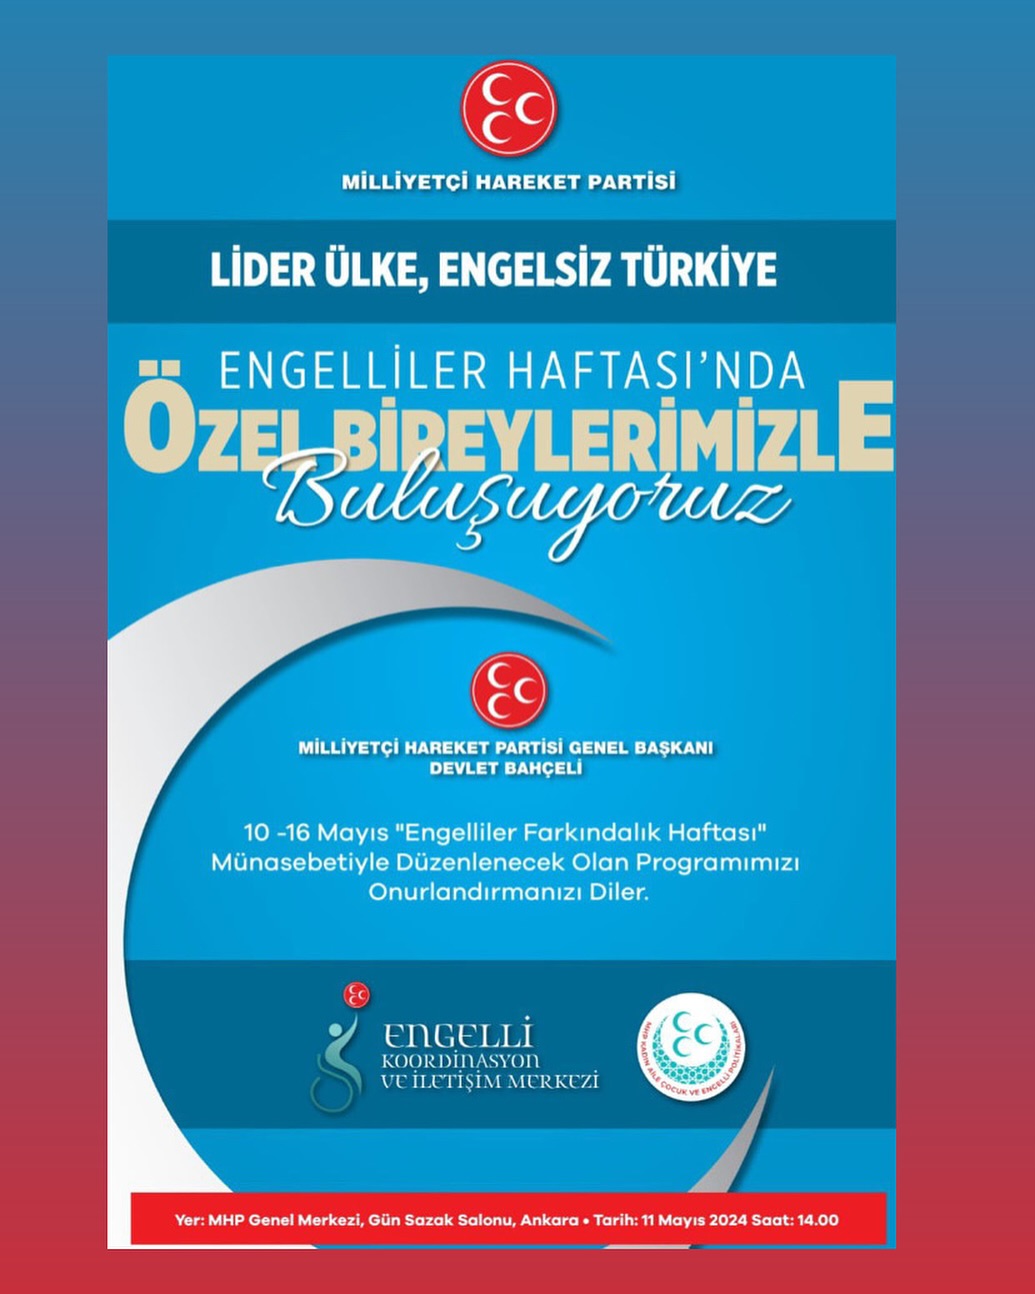 Türkiye'nin Öncü Lideri, Engelsiz Türkiye İçin Program Düzenliyor